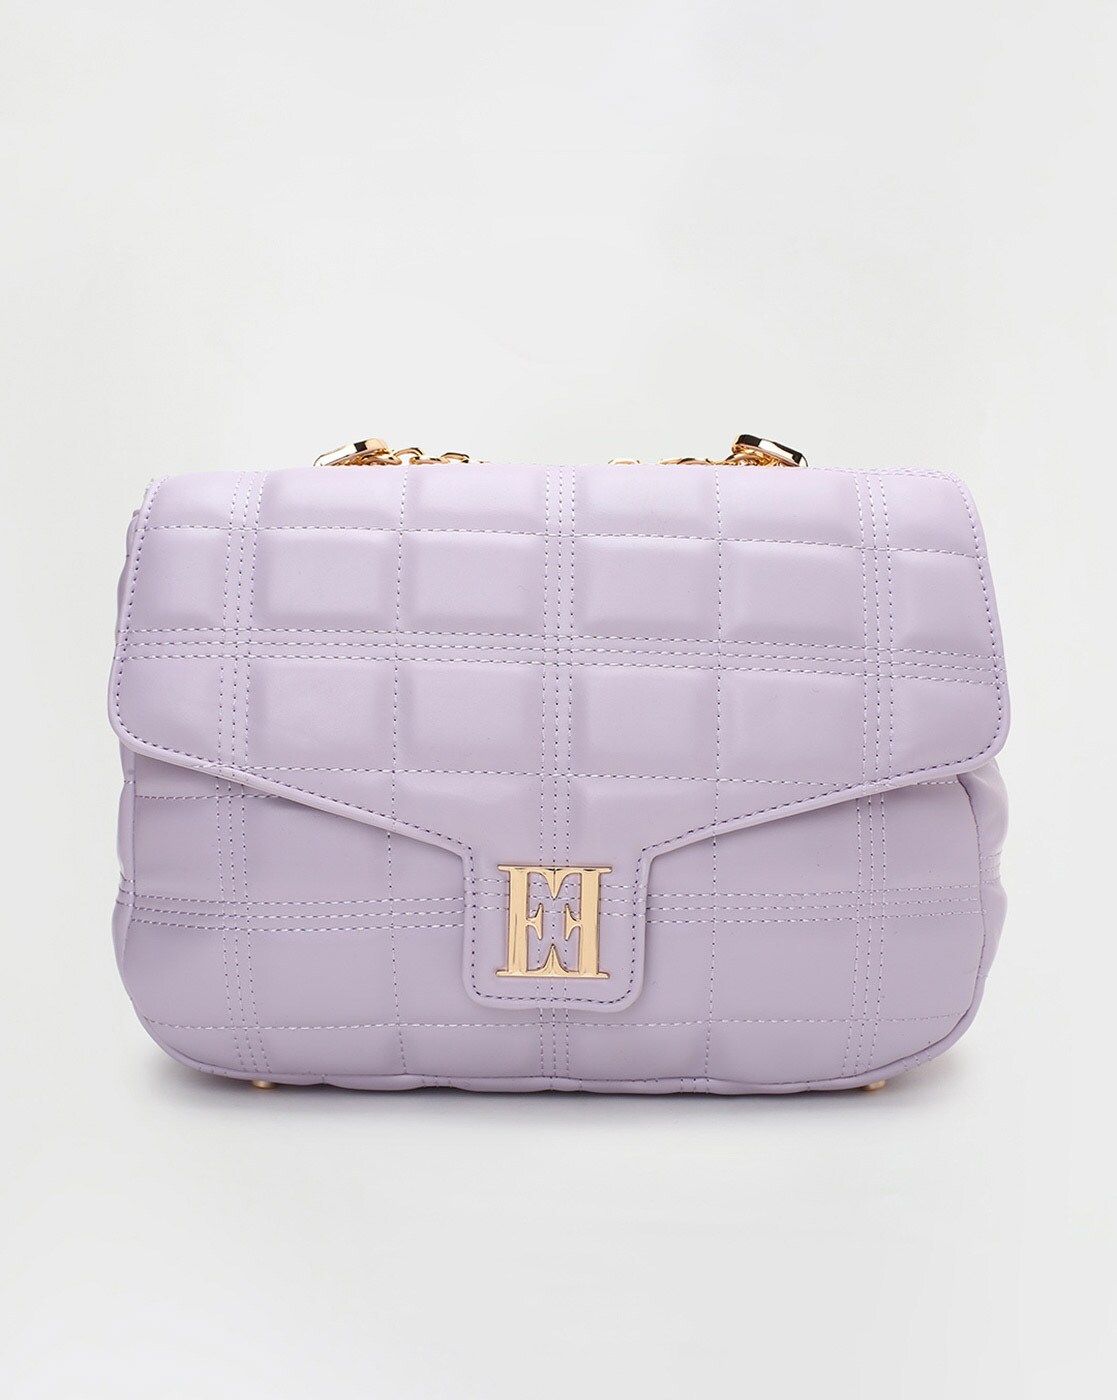 Purple Handbag, Luxury Handbag, Women Purse, Crossbody Bag, BTS Purple Bag,  Top-handle Bag, Mini Bag, Pearl Decor Square Bag, BTS Army Purse - Etsy